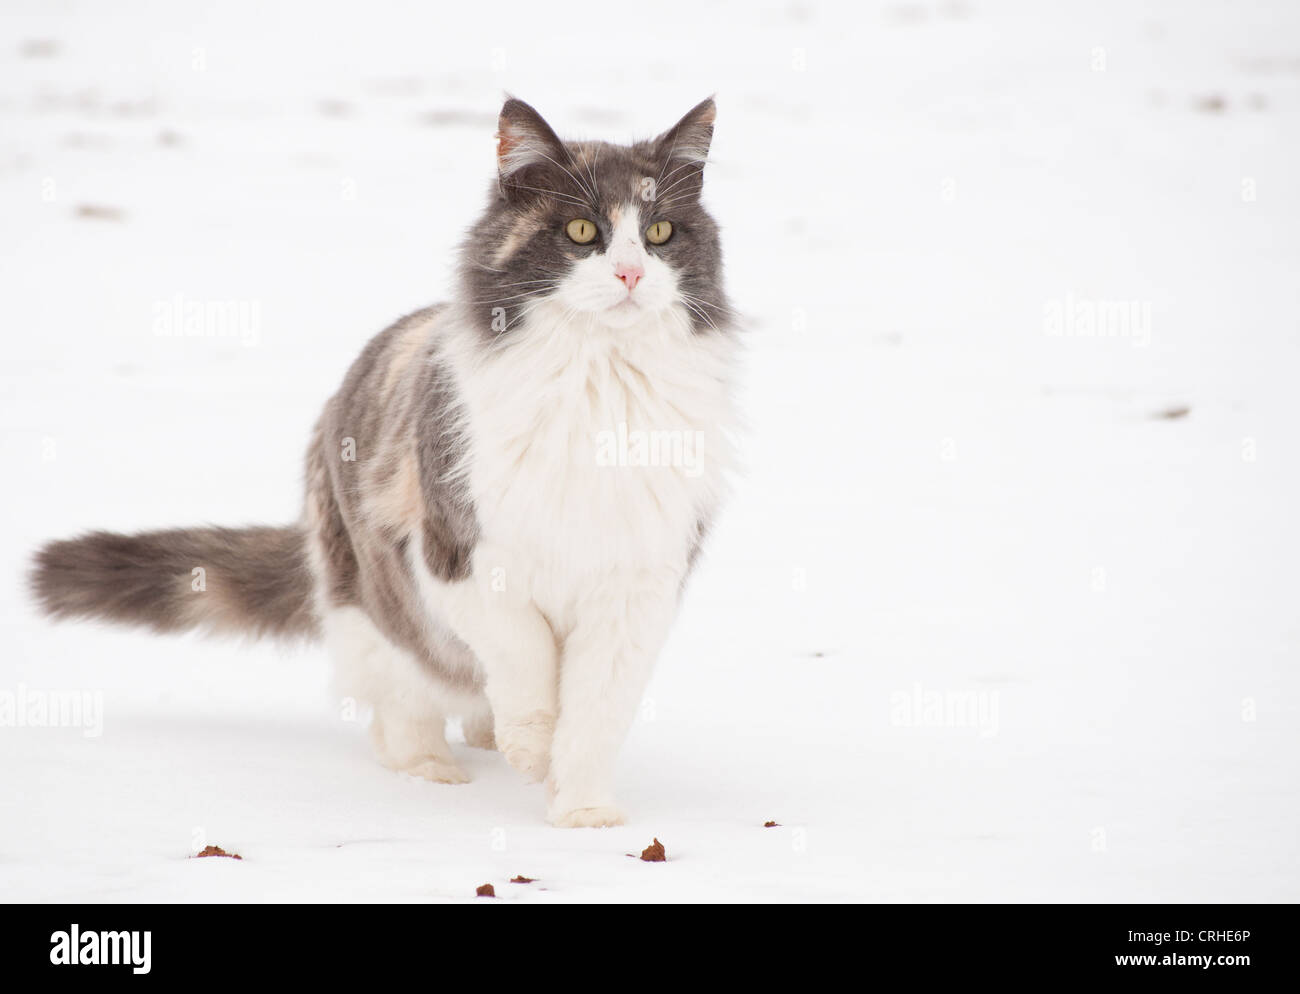 Diluito gatta calico in snow, alertly cercando in distanza Foto Stock